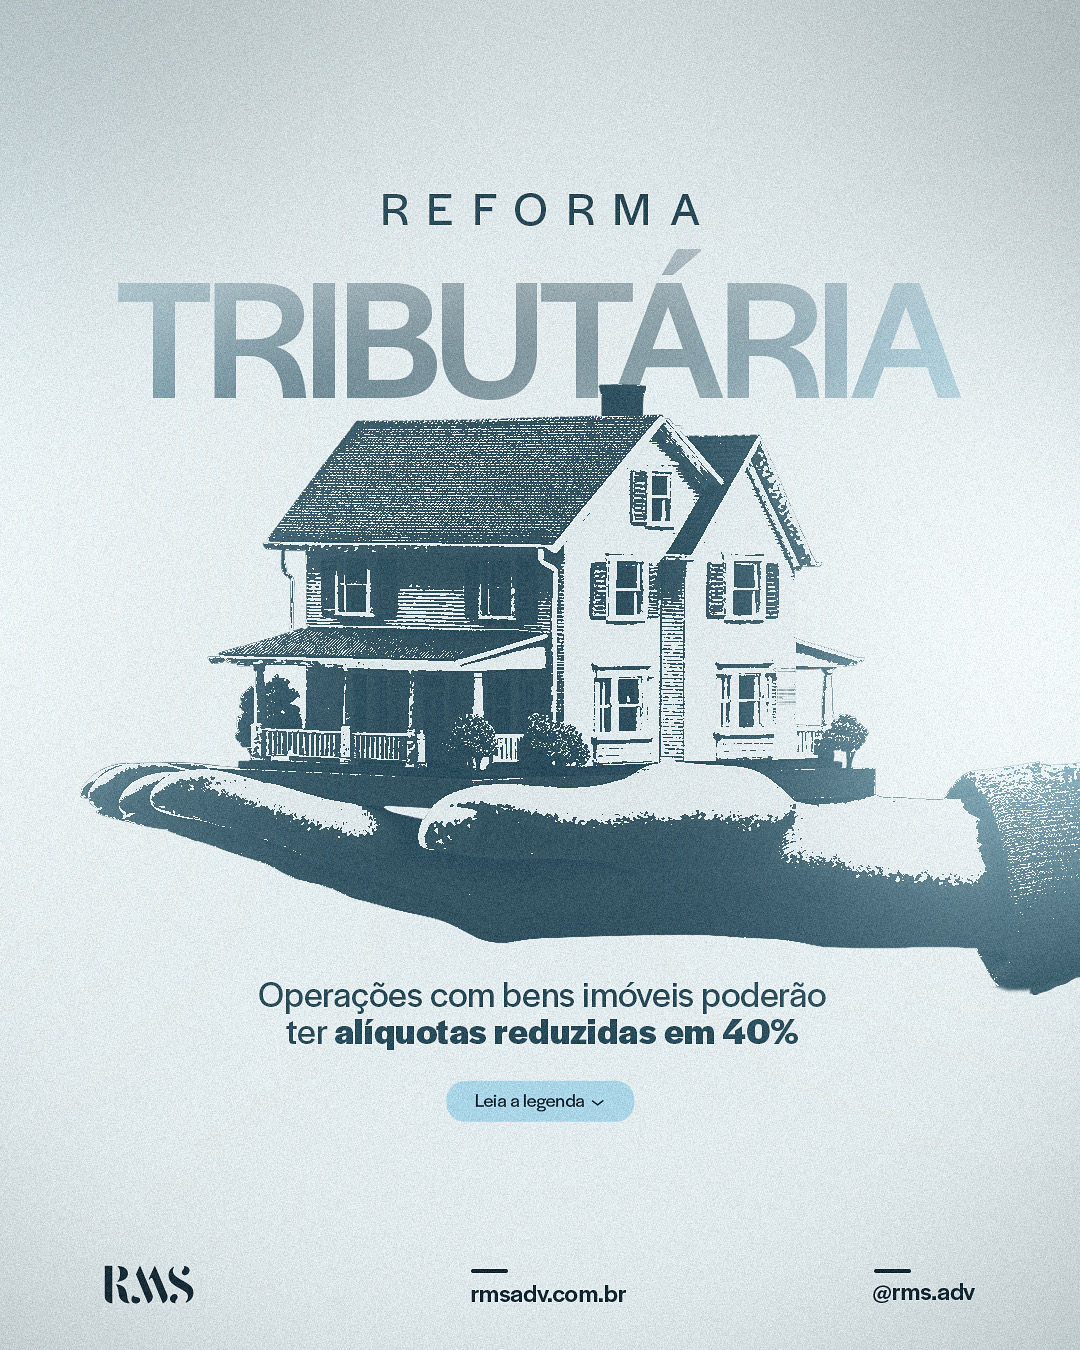 Reforma tributária: Operações com bens imóveis poderão ter alíquotas reduzidas em 40%